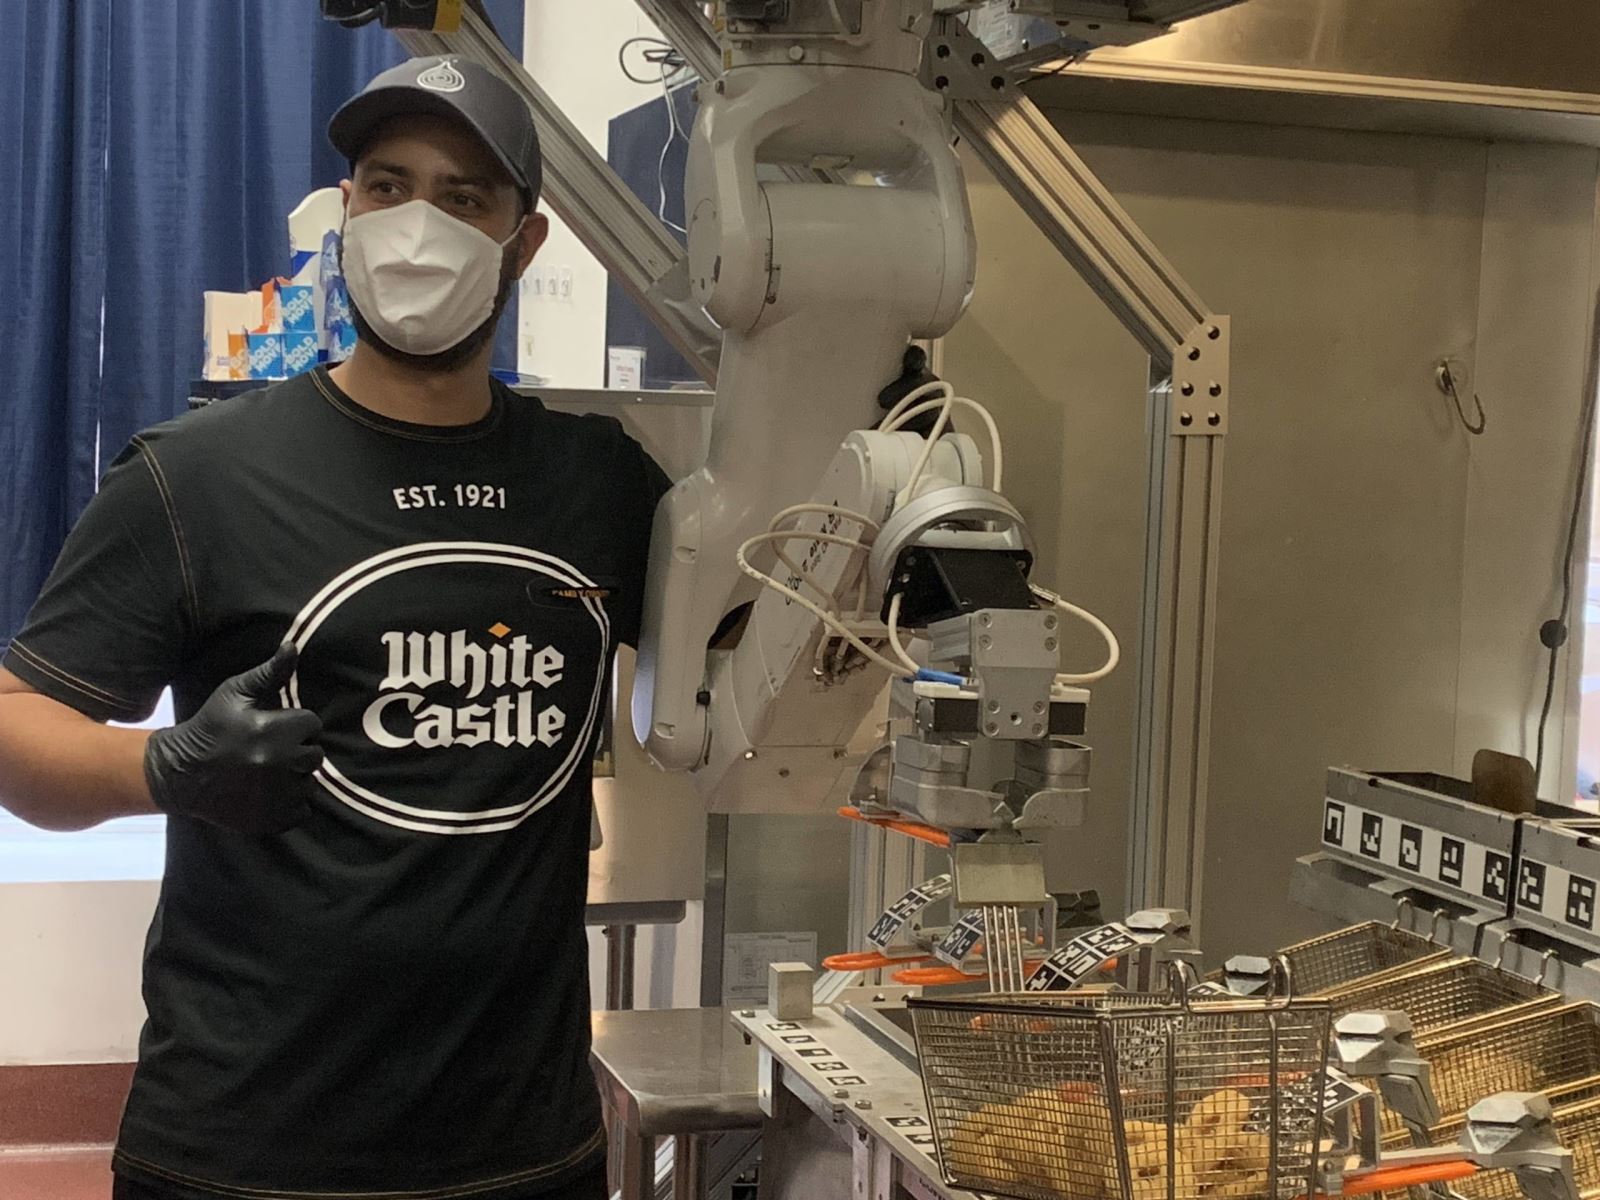 Chuỗi cửa hàng bán bánh hamburger White Castle sẽ thử nghiệm robot có thể làm khoai tây chiên và các món ăn khác. Ảnh: prowell-tech.com